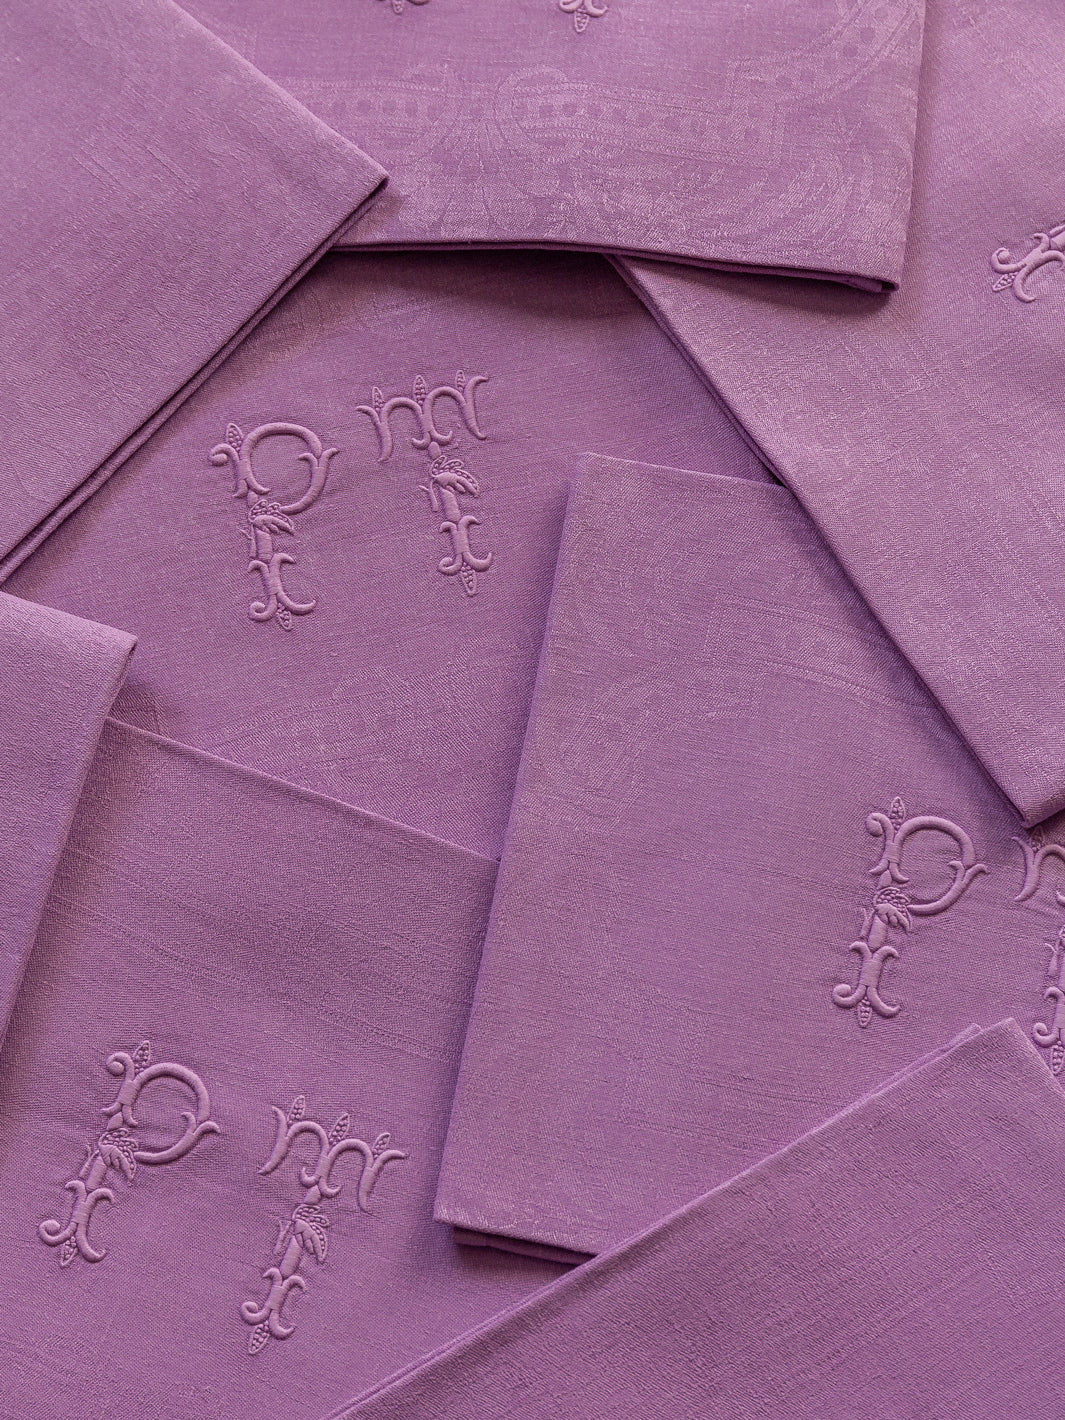 Set of 8 Violet Damask "PT" napkins